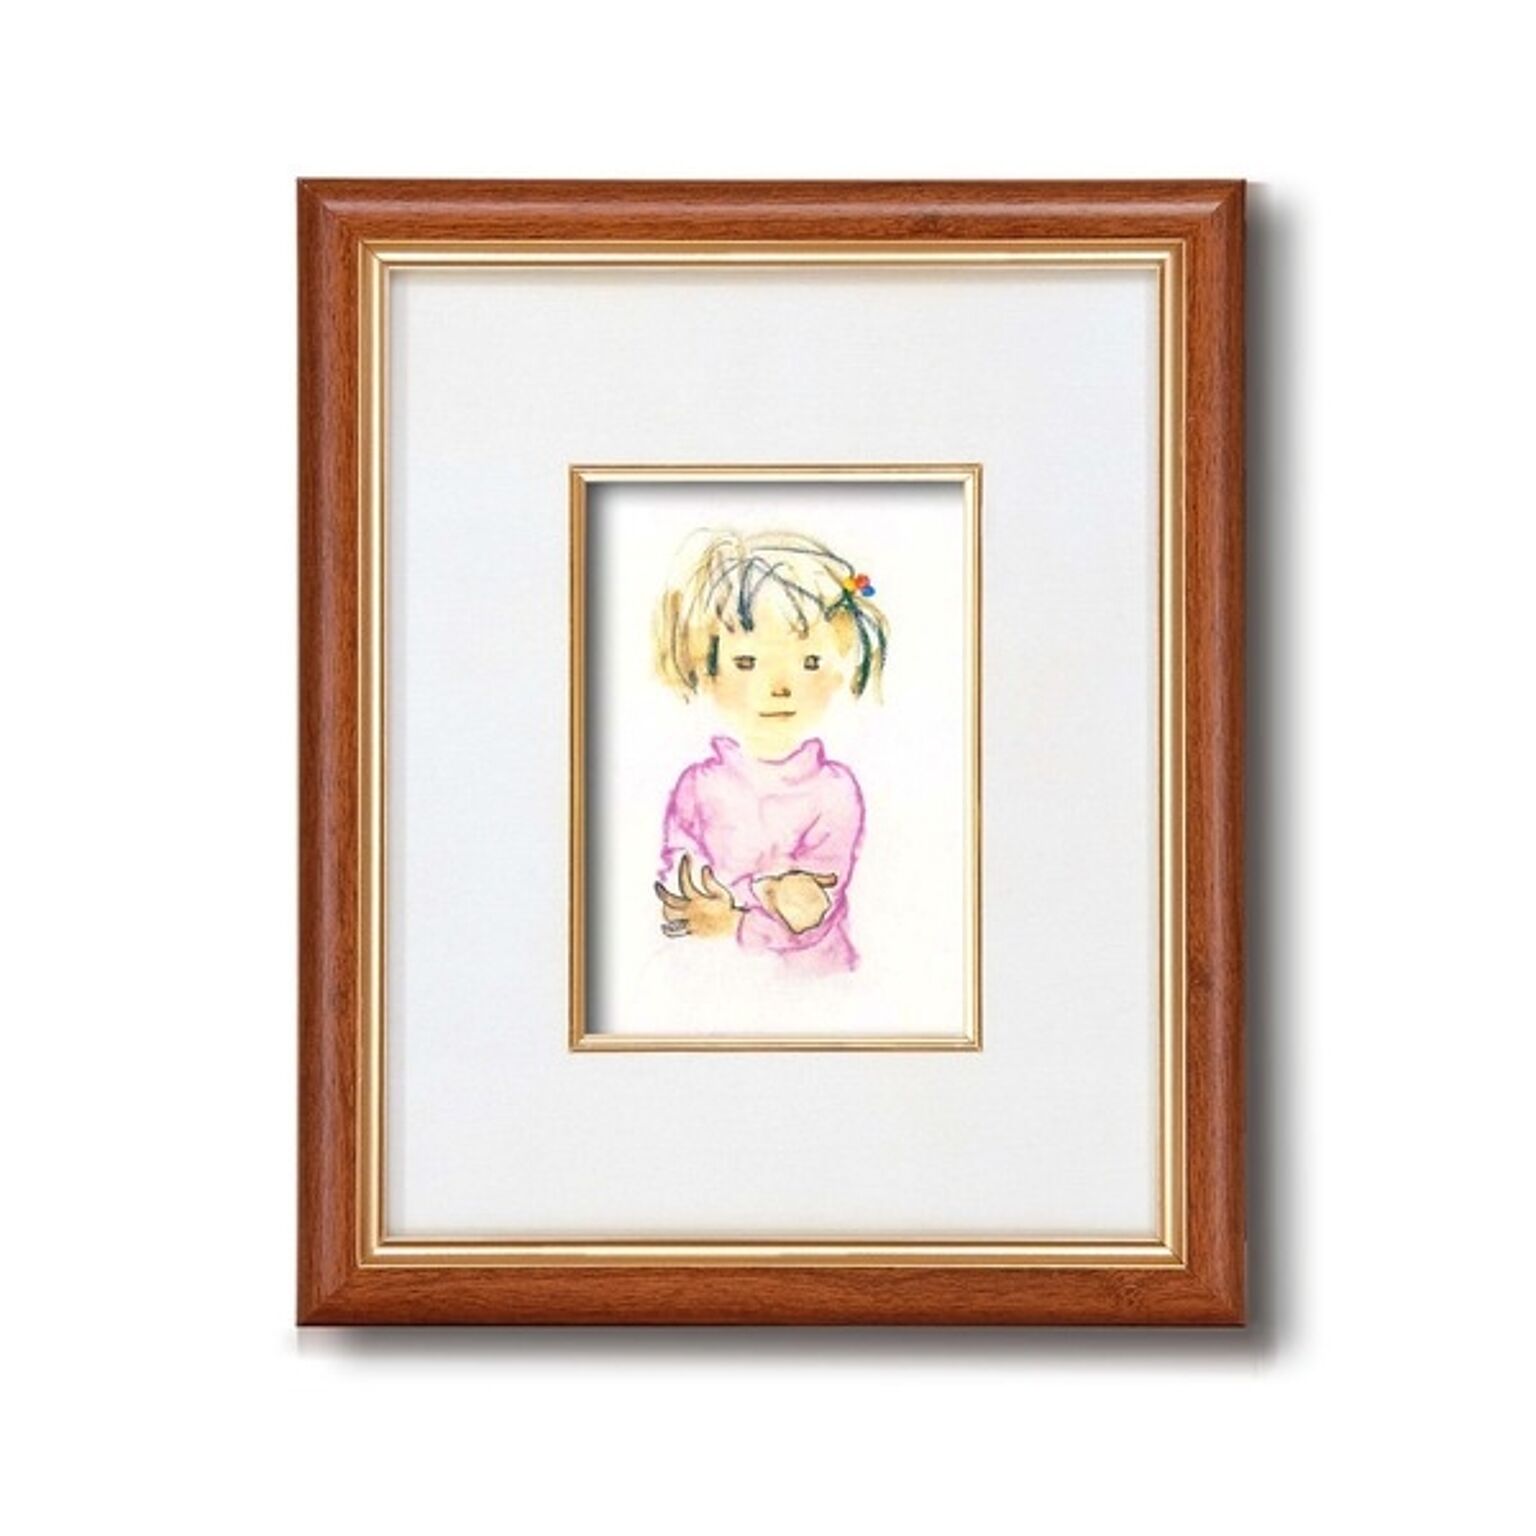 額縁/フレーム 【インチ判 タテ】 いわさきちひろ 「ピンクのセーターの少女」 スタンド付き 壁掛け可 日本製